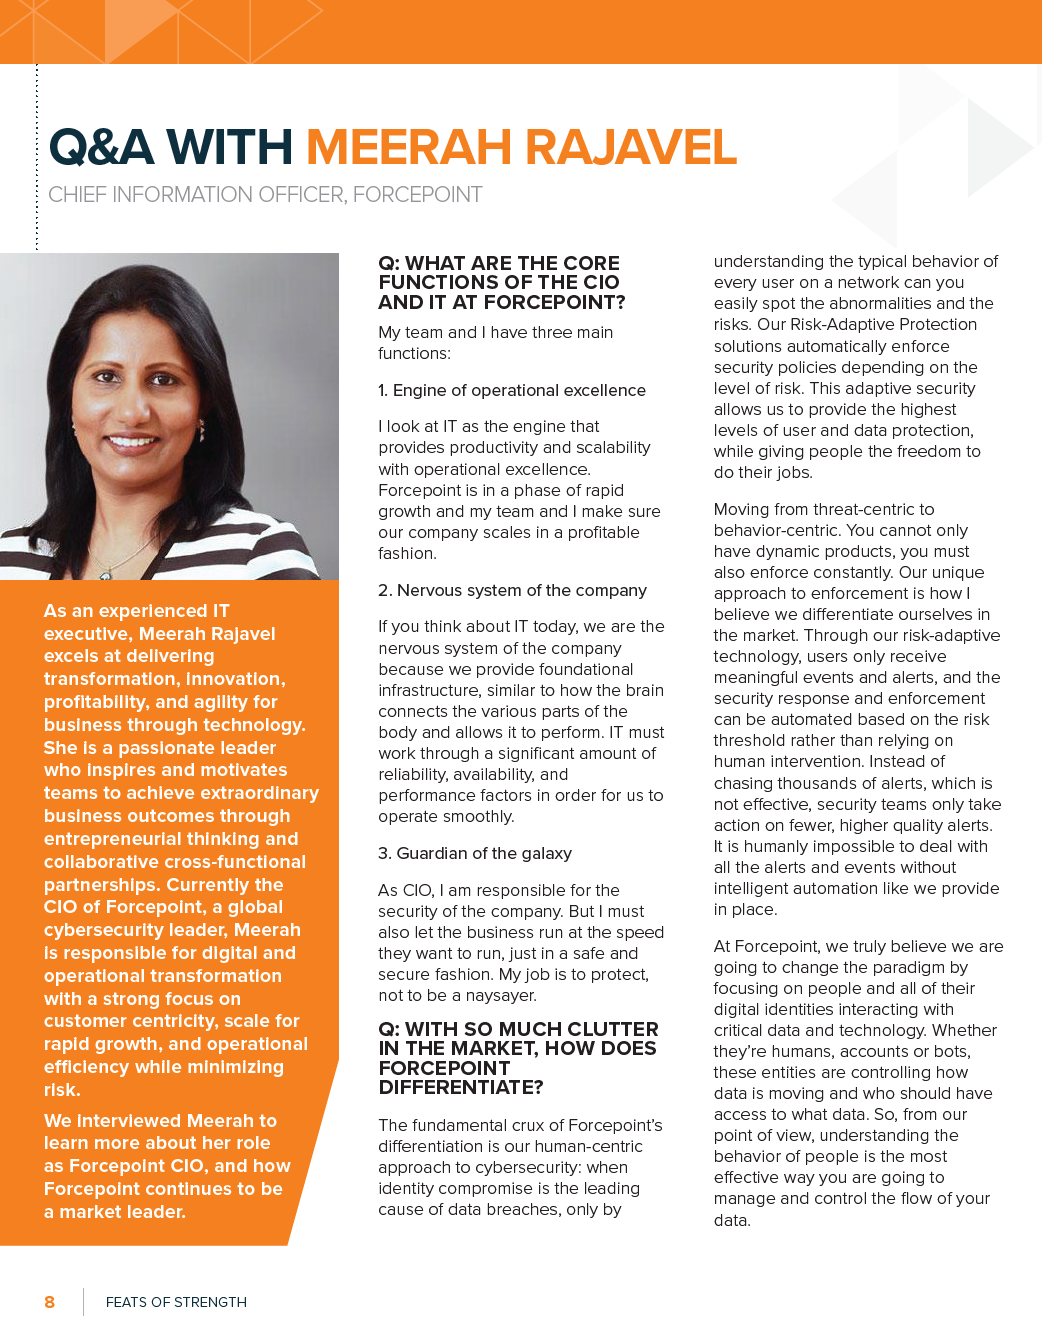 Profile: Meerah Rajavel, CIO, Forcepoint